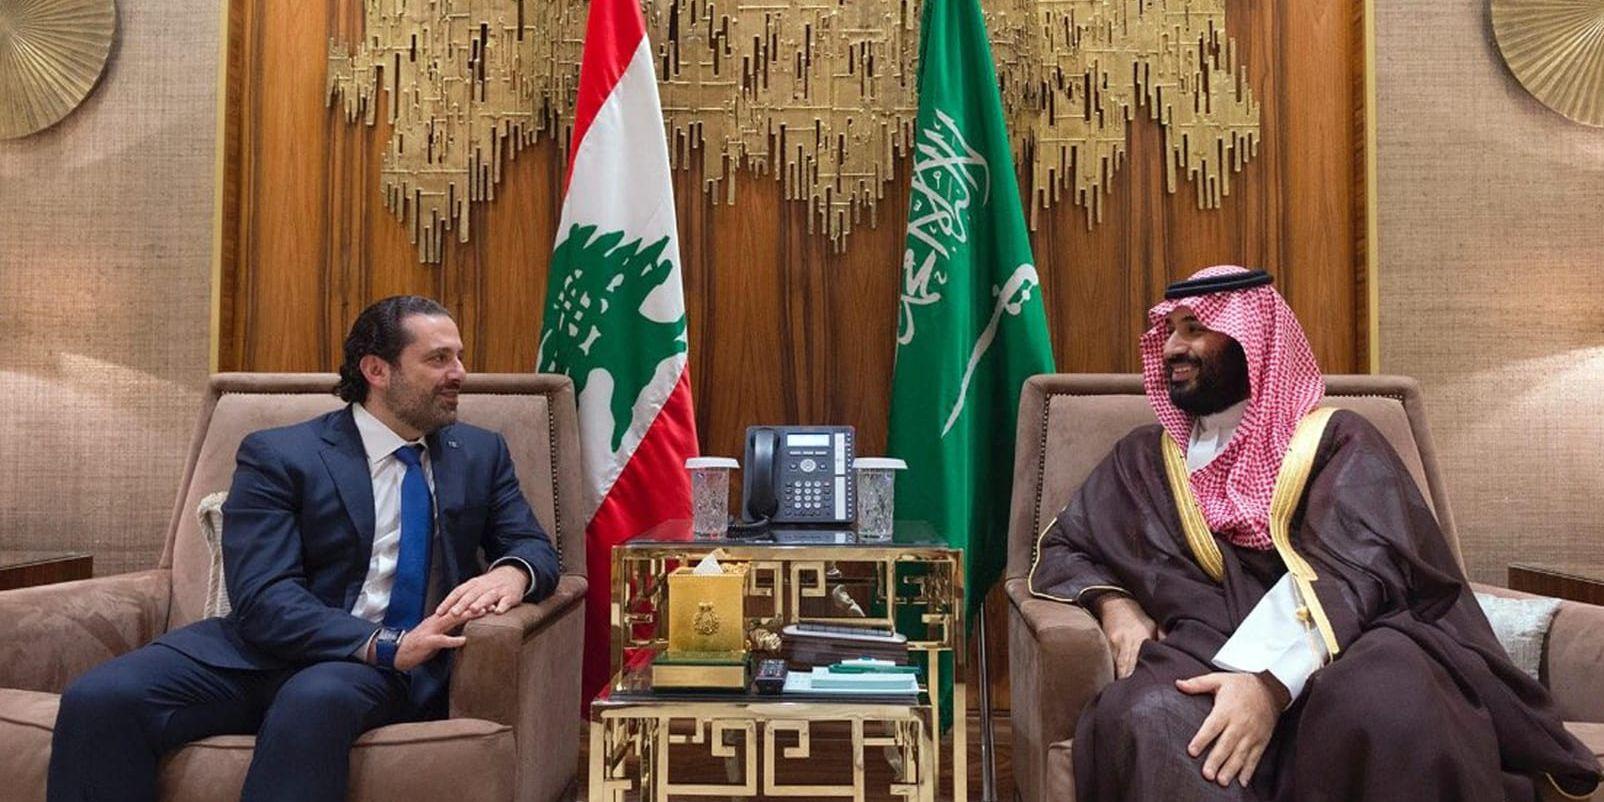 Libanons premiärminister Saad Hariri (till vänster), som nyligen meddelade sin avgång, tillsammans med den saudiske kronprinsen Mohammed bin Salman. Arkivbild.